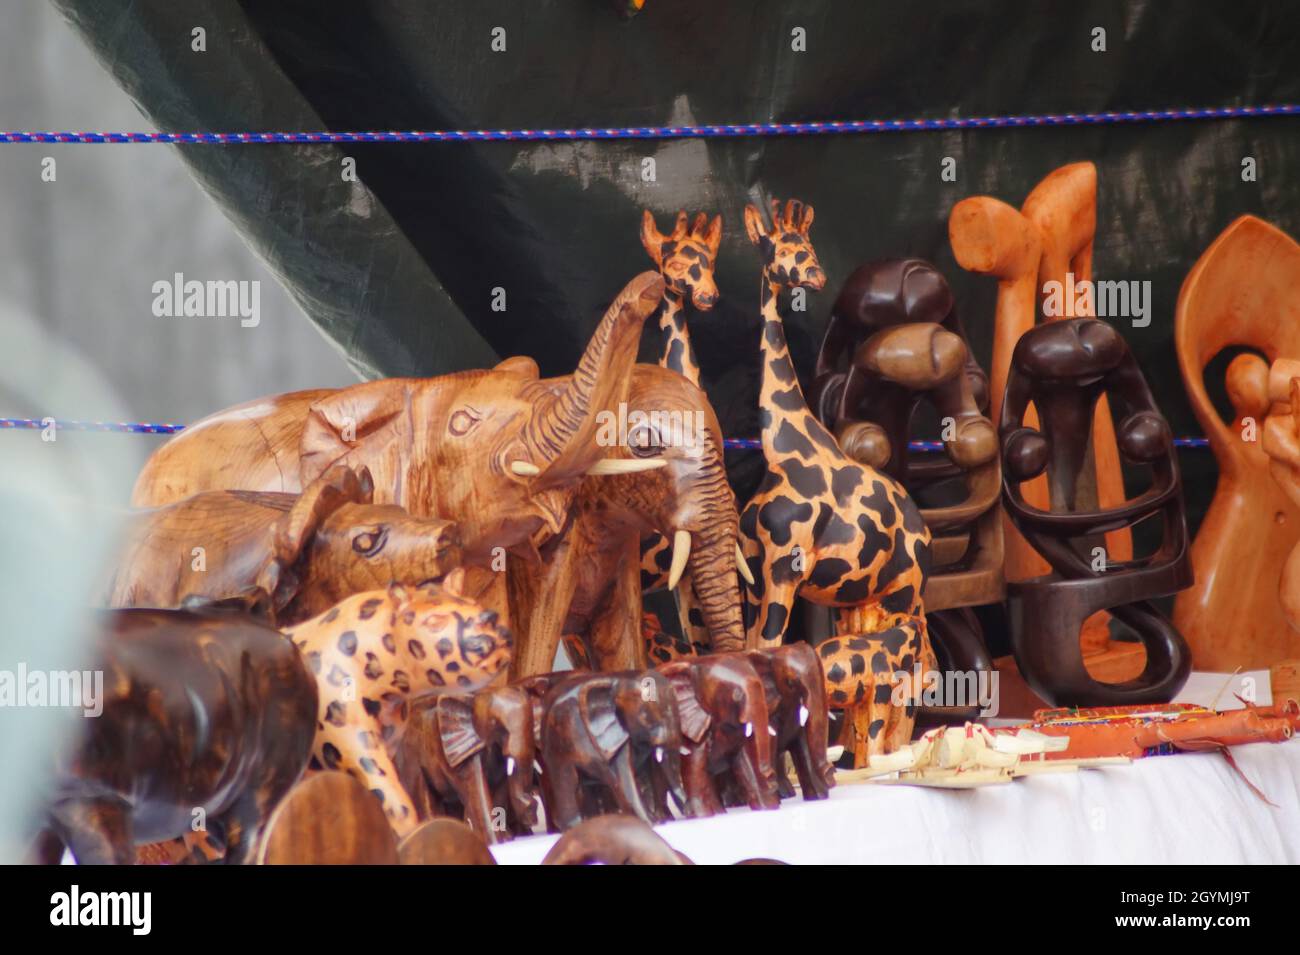 Afrikanische Holzfiguren auf einem Markt Stock Photo